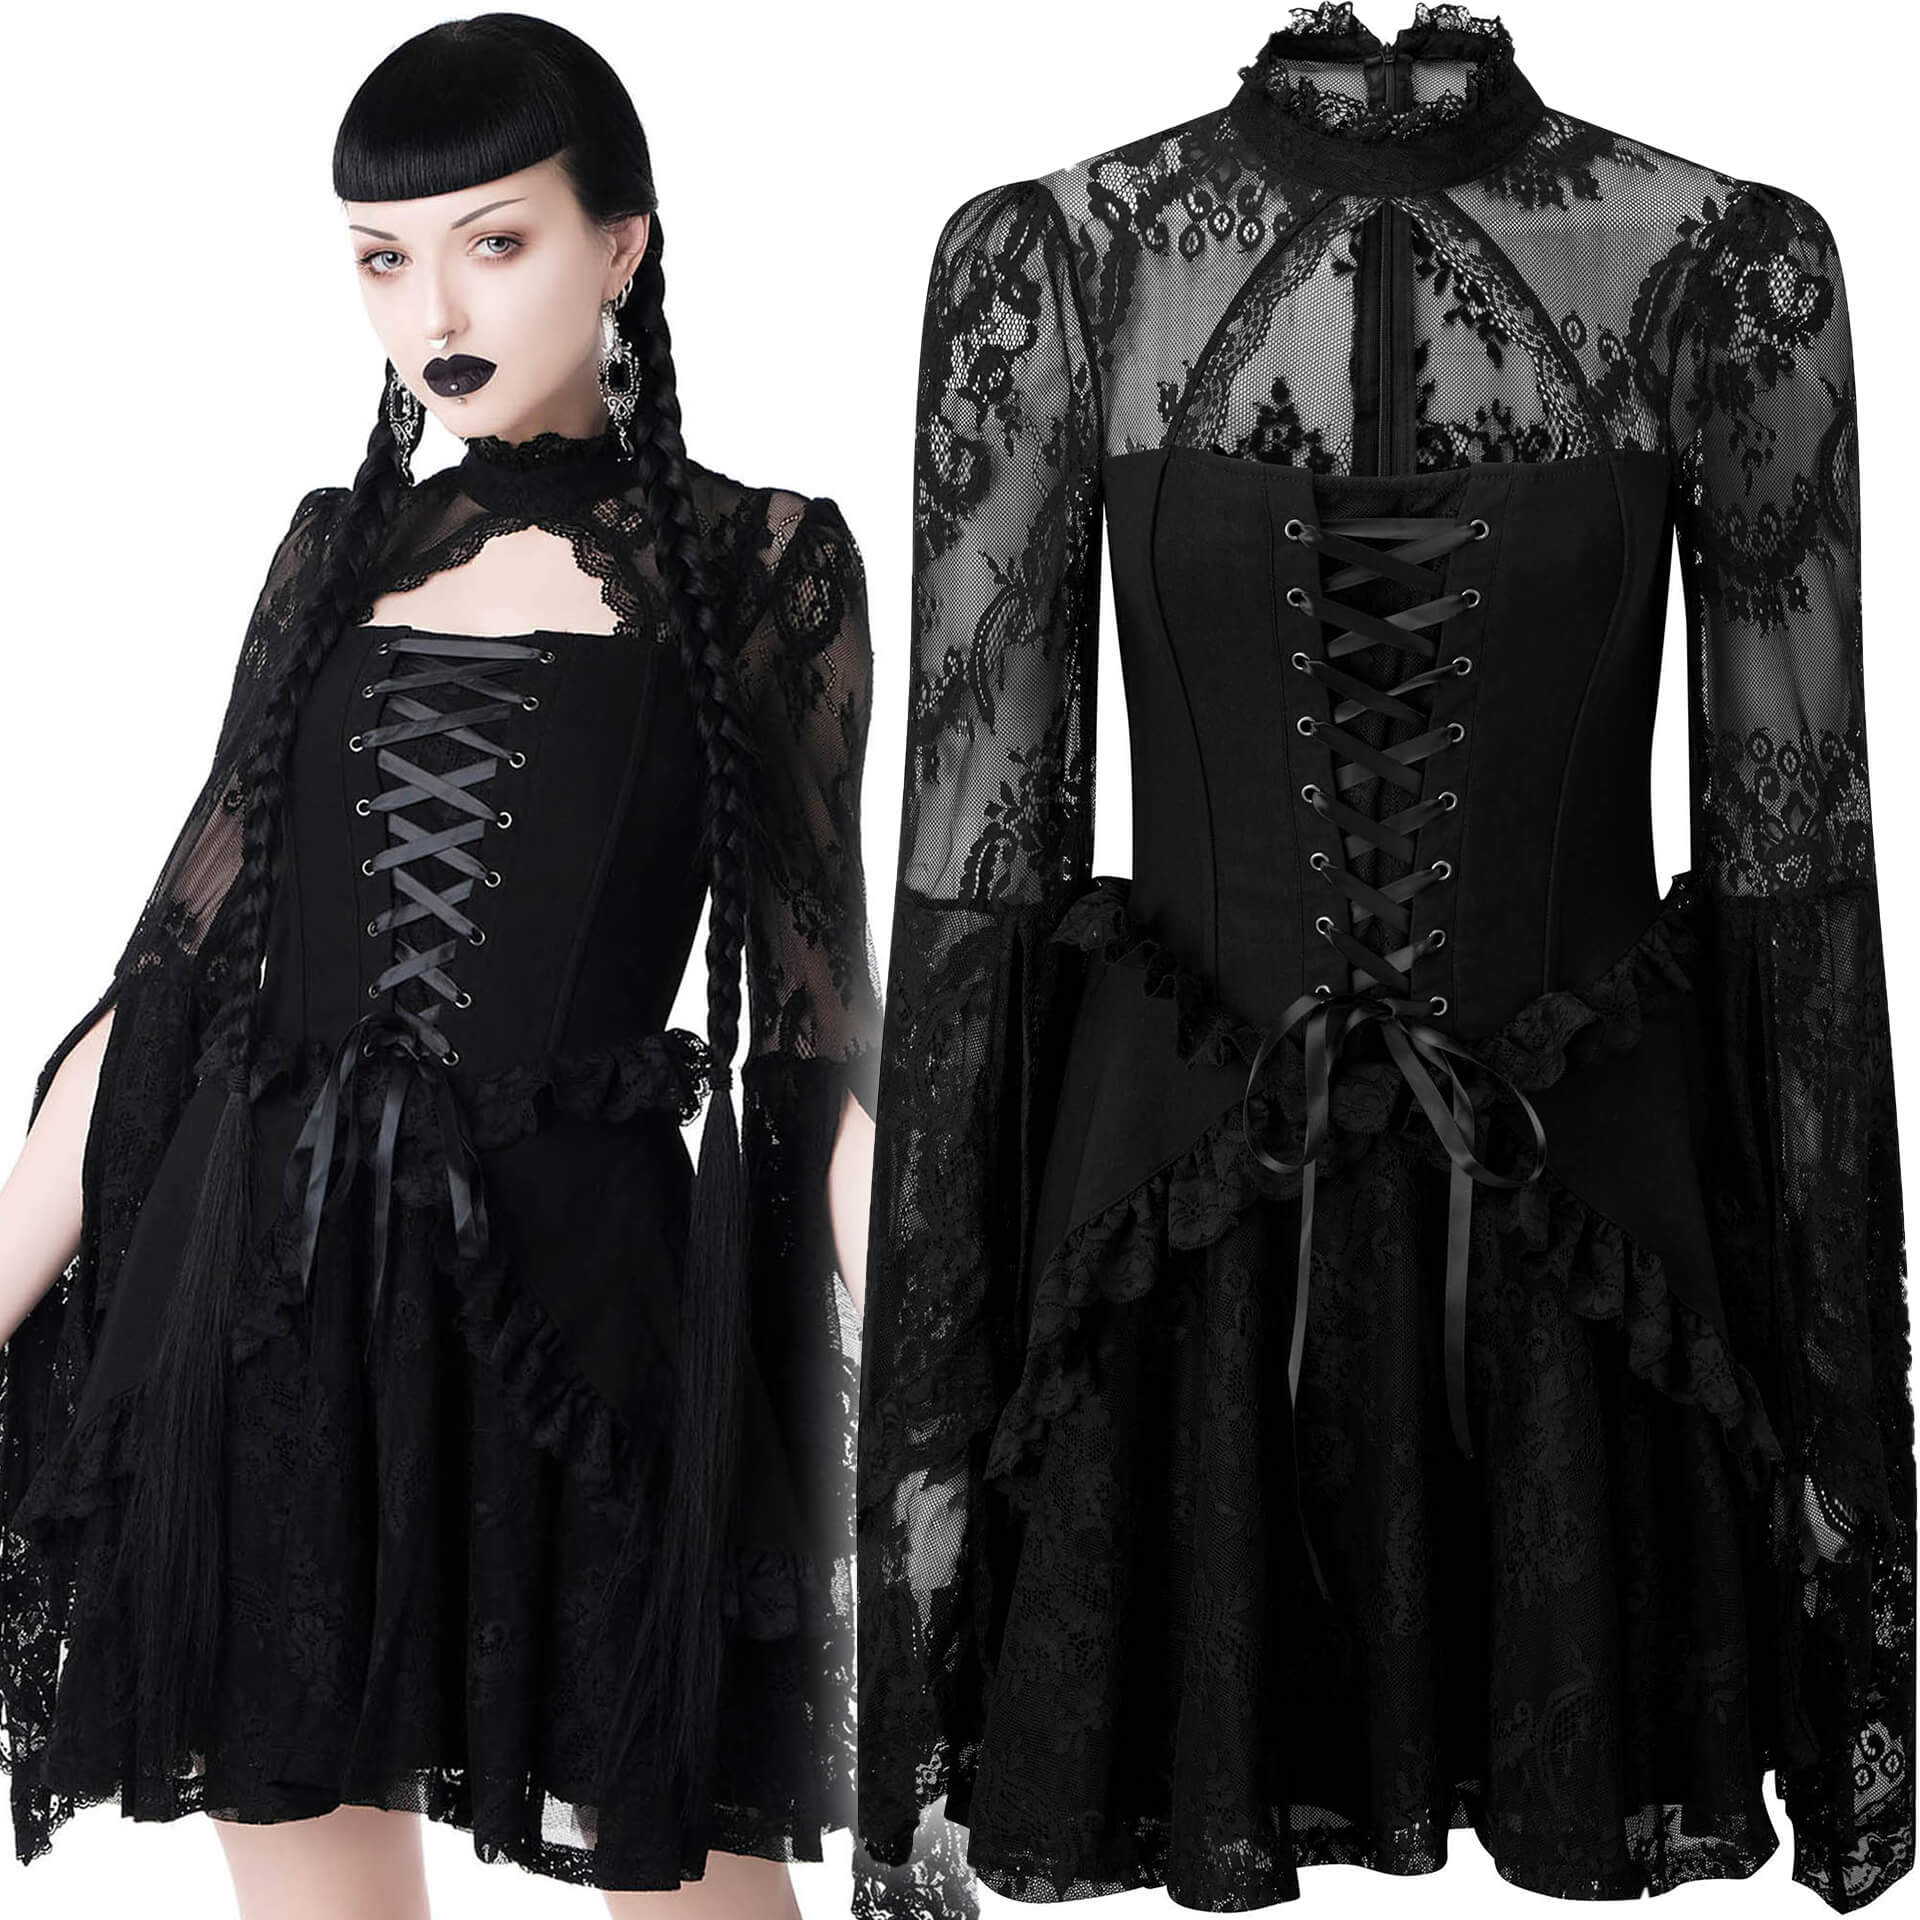 Dark Masquerade Dress KSRA002220 by KILLSTAR brand